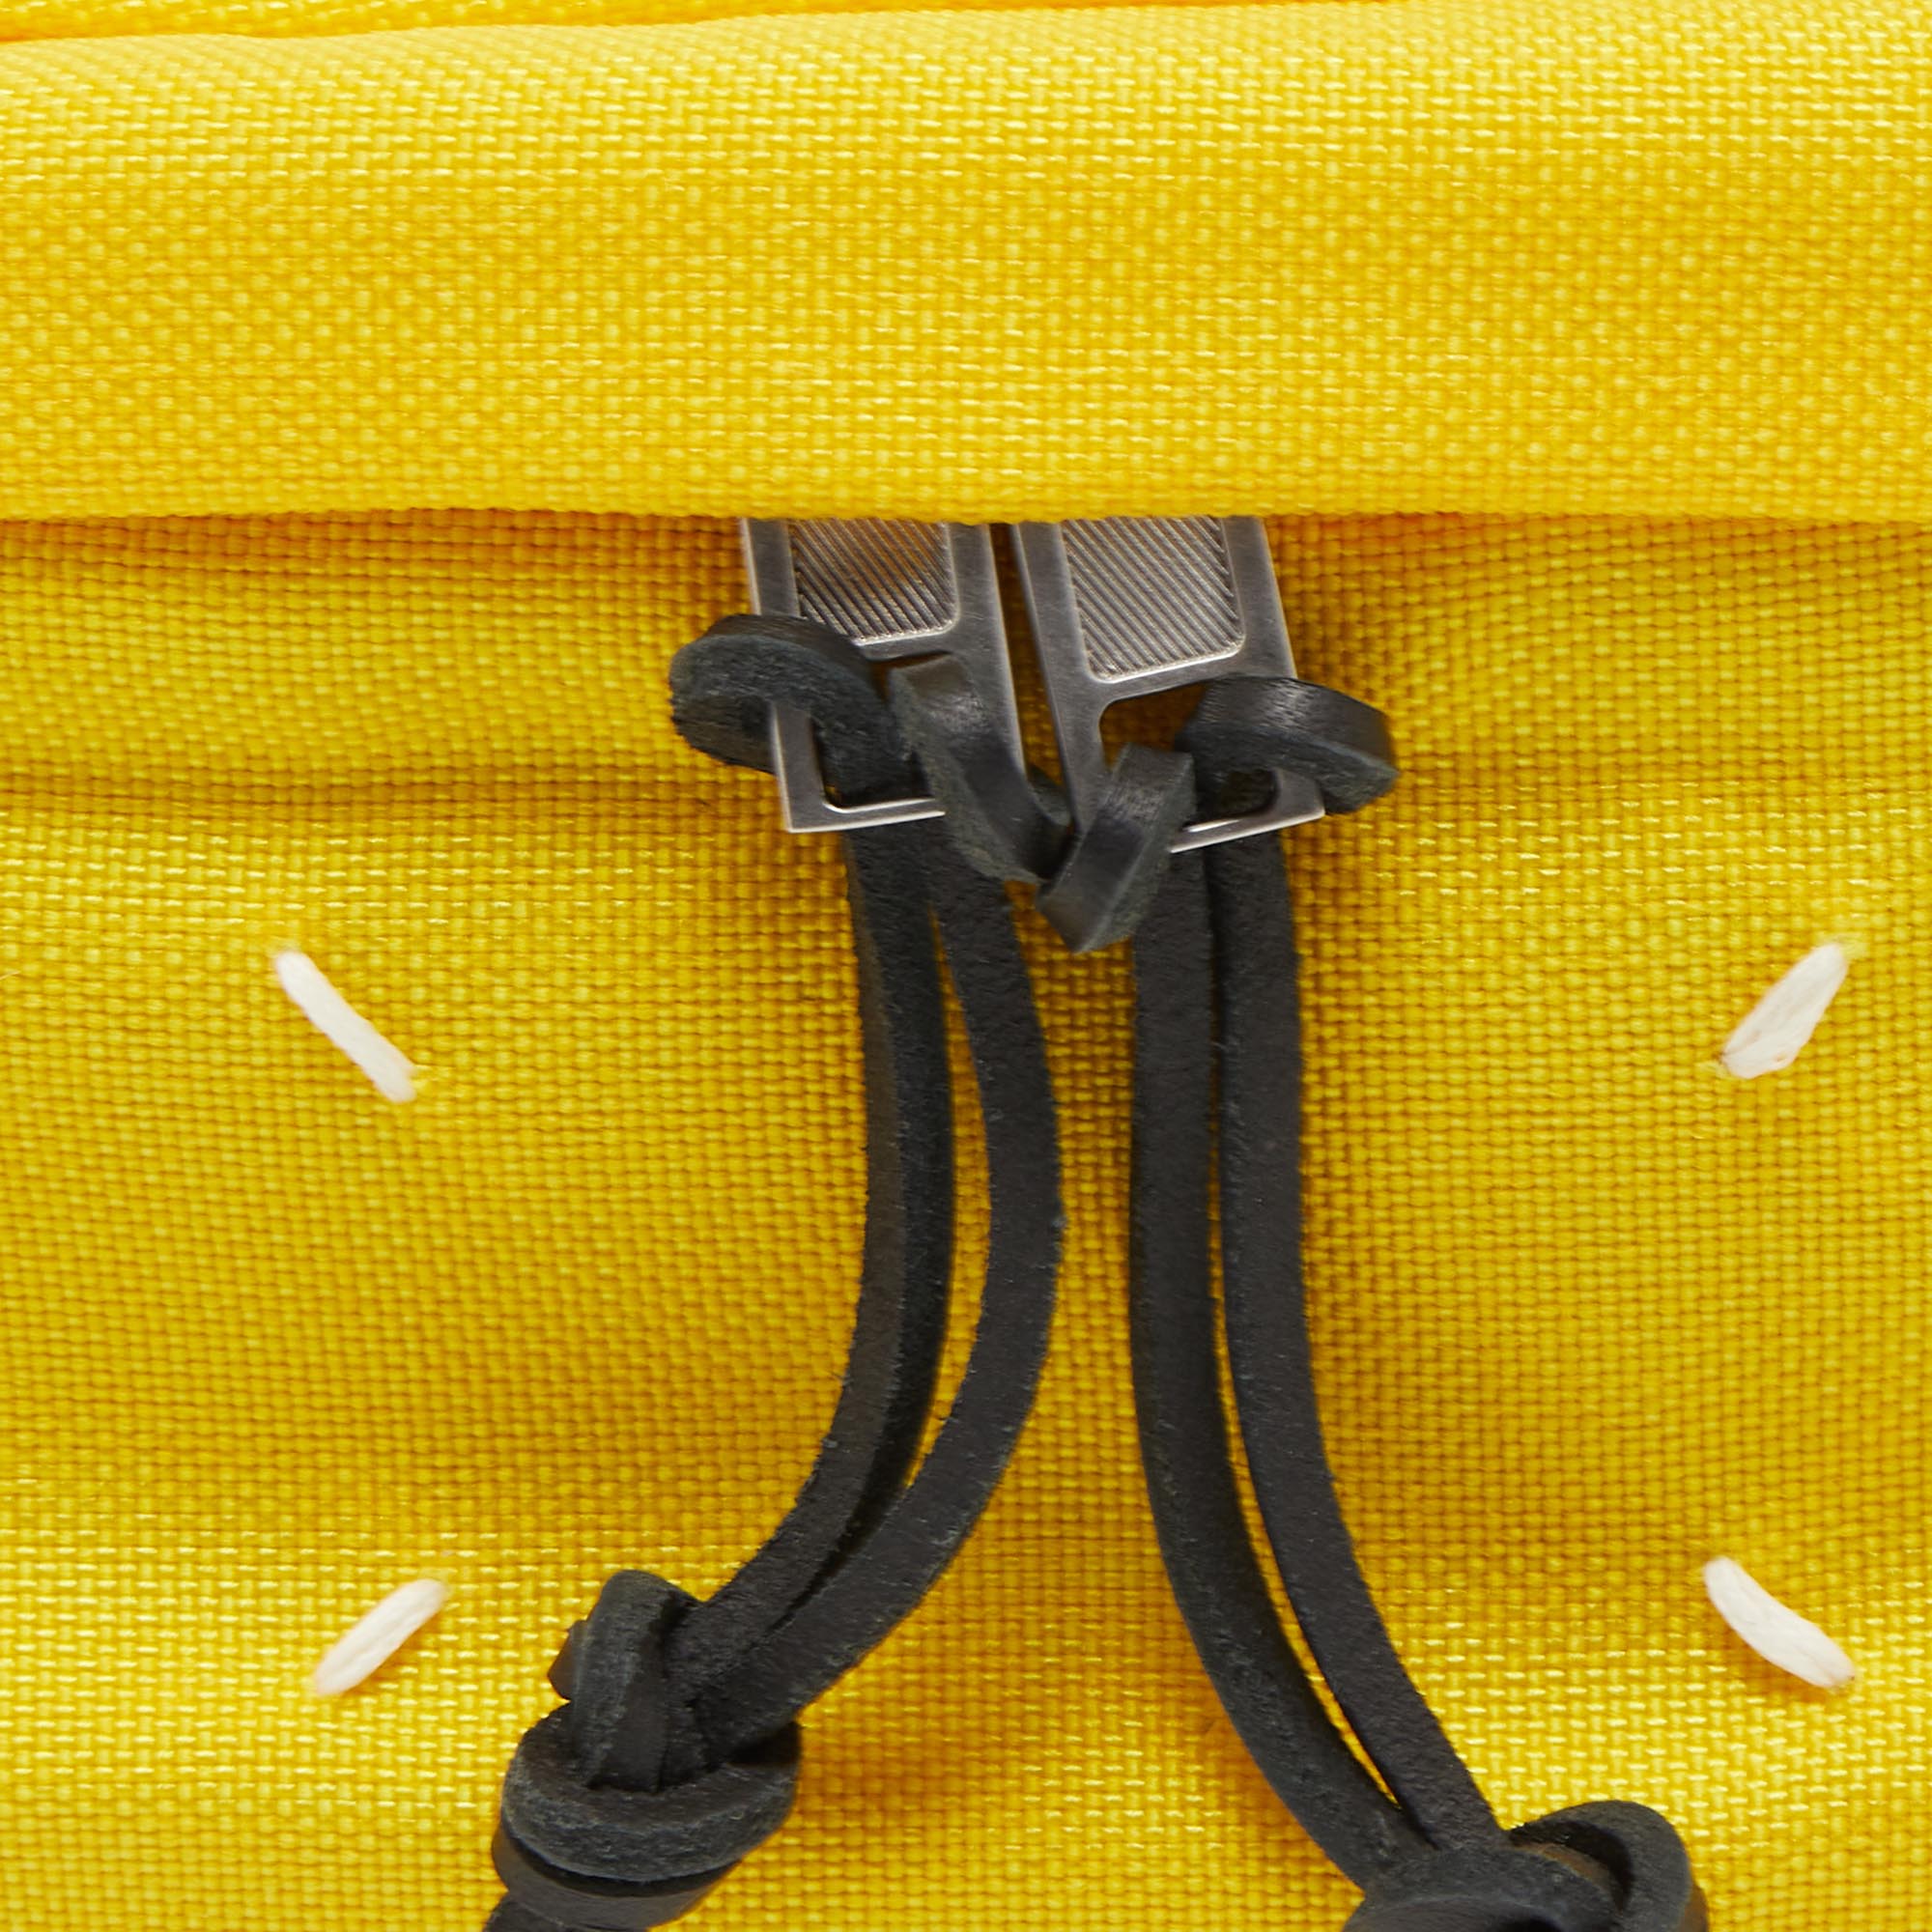 Maison Martin Margiela Yellow/Black Nylon And Leather Belt Bag